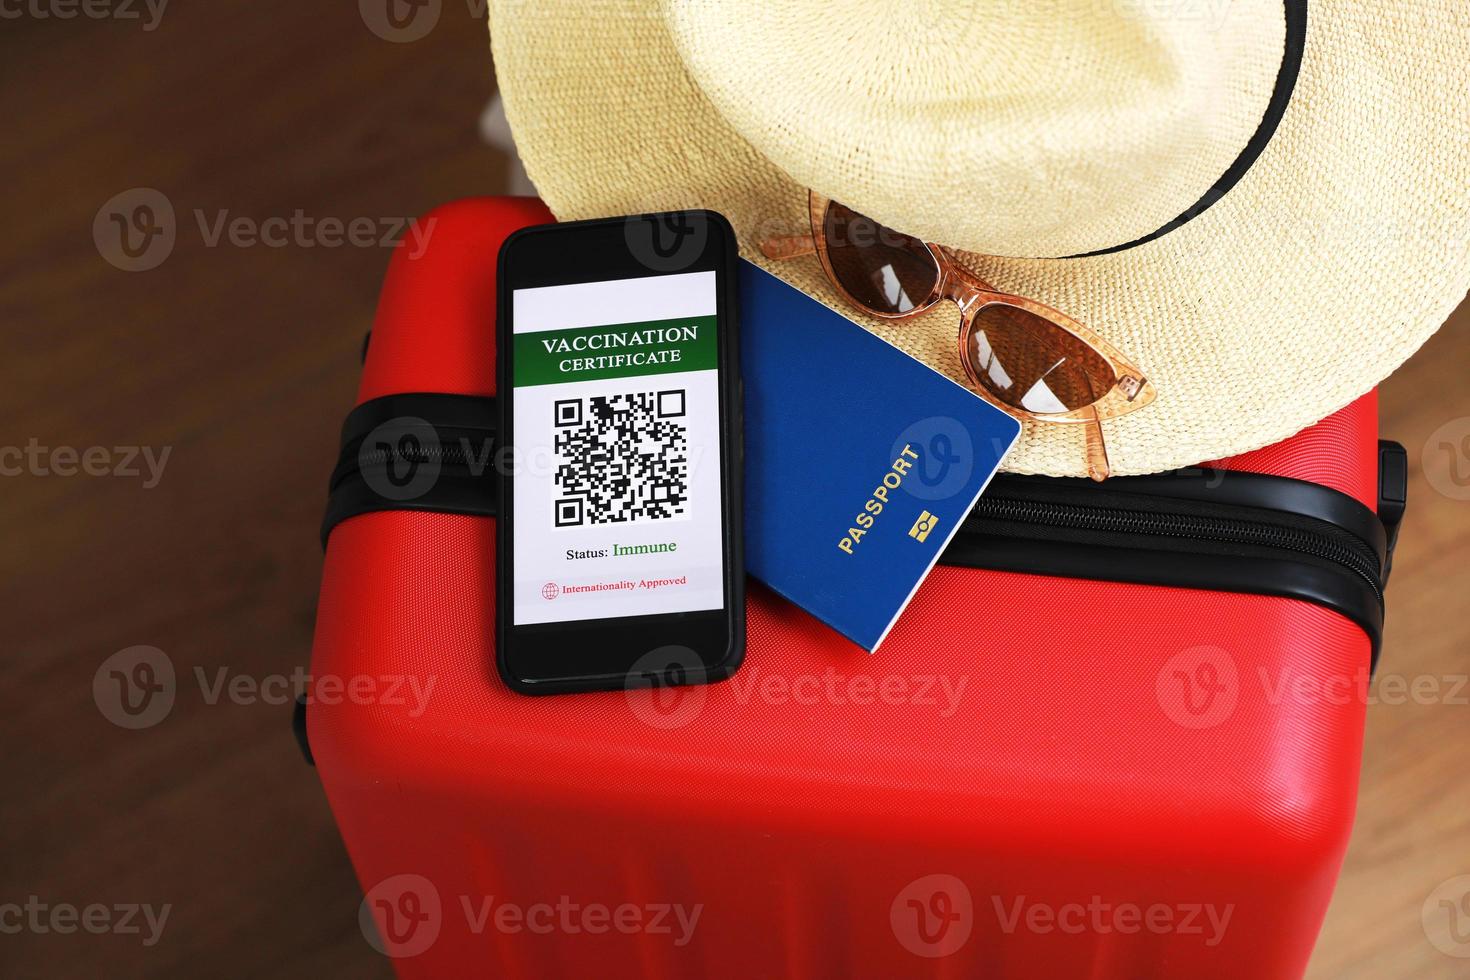 novo conceito normal. close-up vista de um smartphone com um passaporte de saúde digital imune, uma mala vermelha, máscara protetora, chapéu de palha, passaporte e óculos de sol. viajar de avião durante uma pandemia. foto